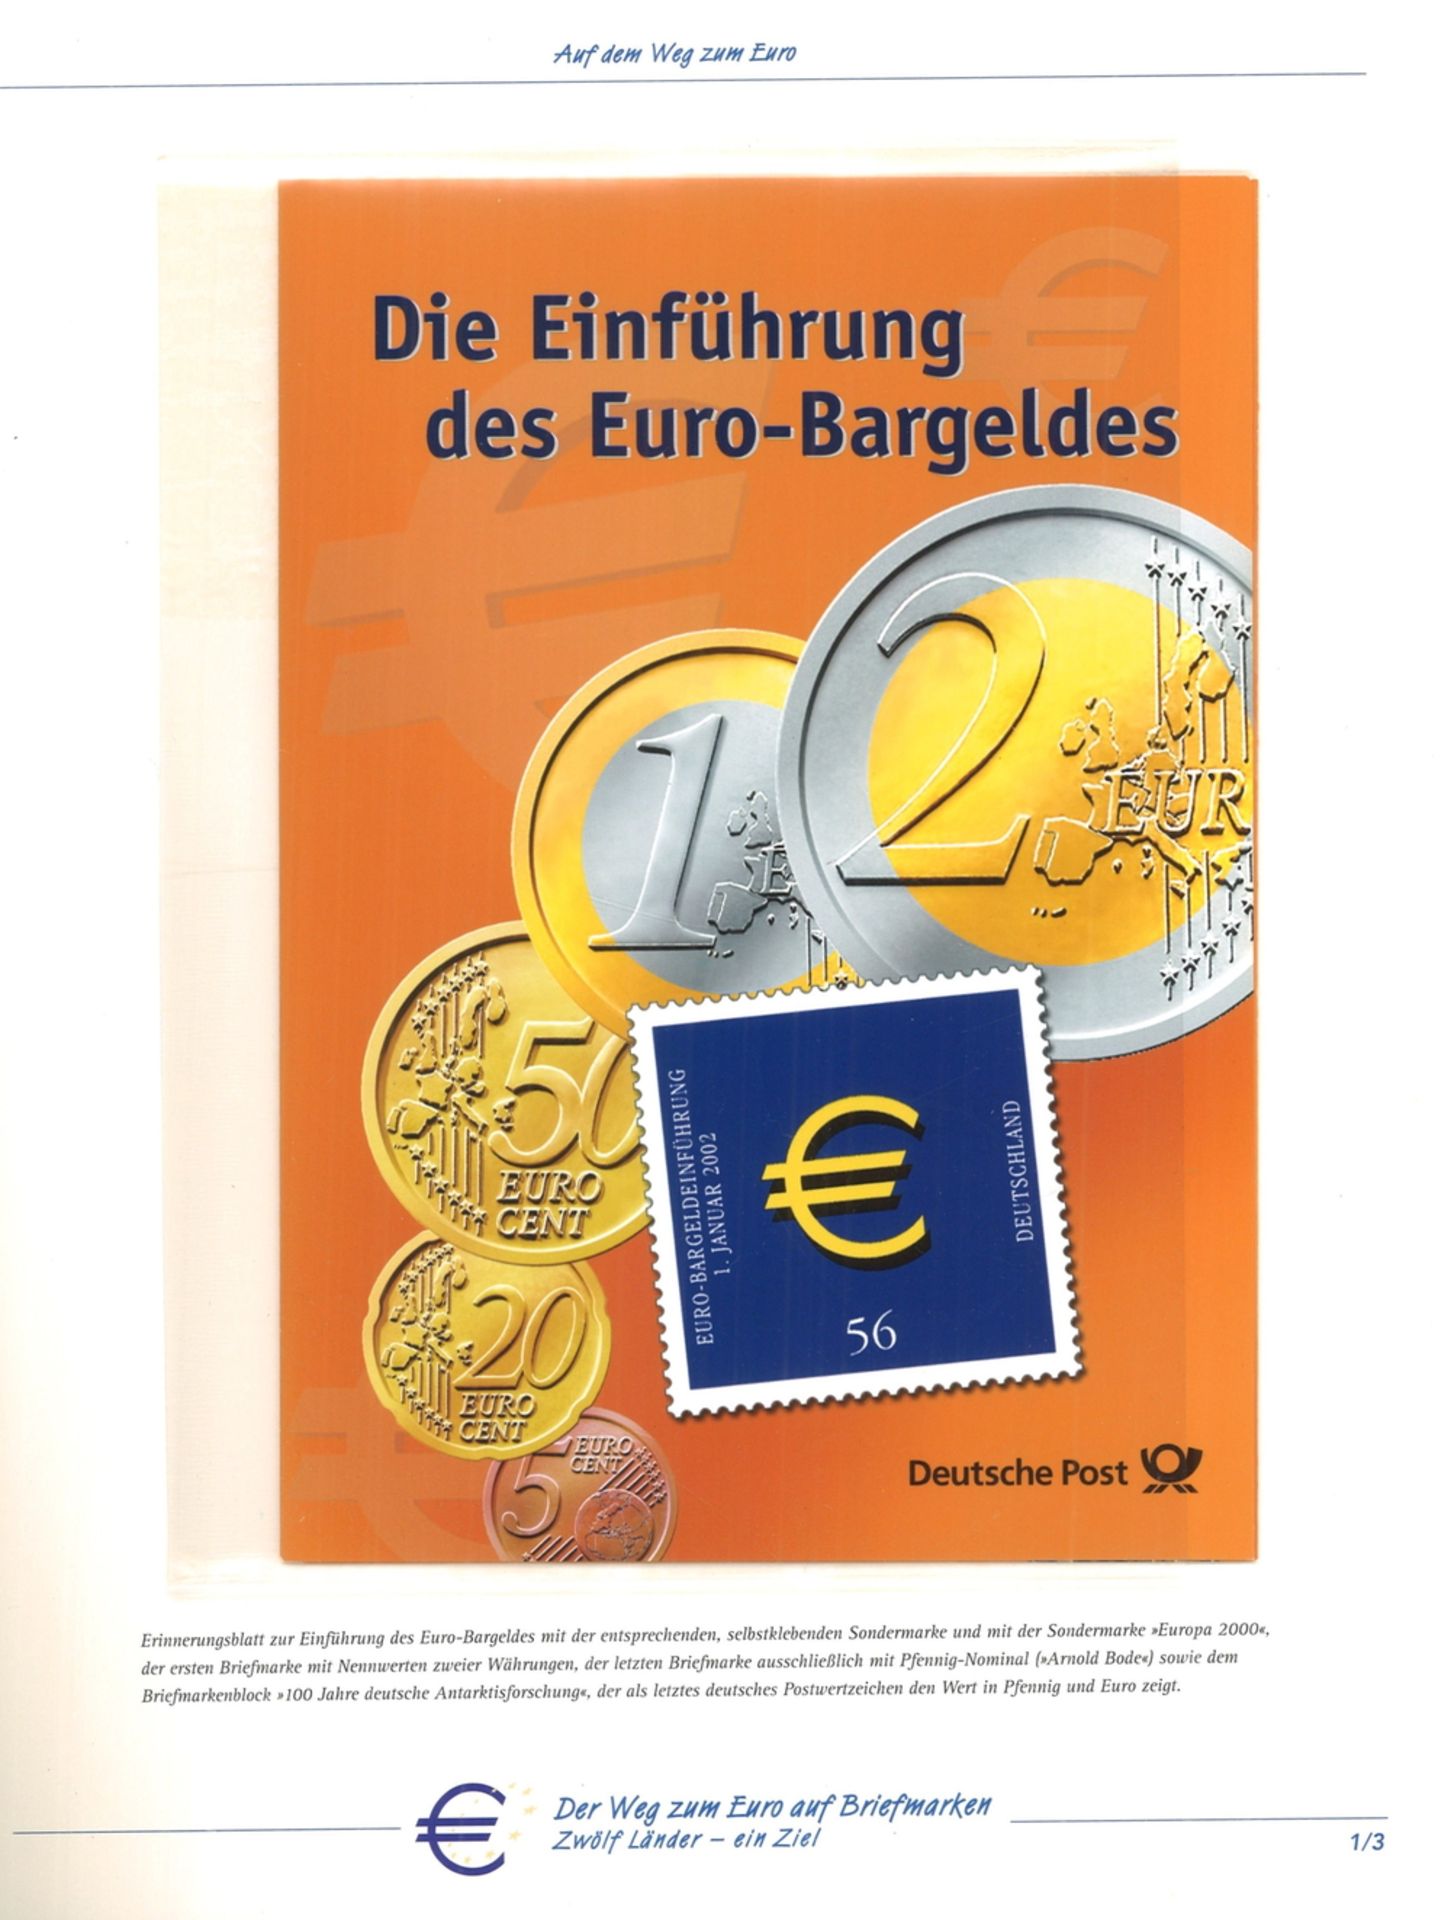 Der Weg zum Euro auf Briefmarken. Zwölf Länder - ein Ziel. Mit allen Euromarken, postfrisch.